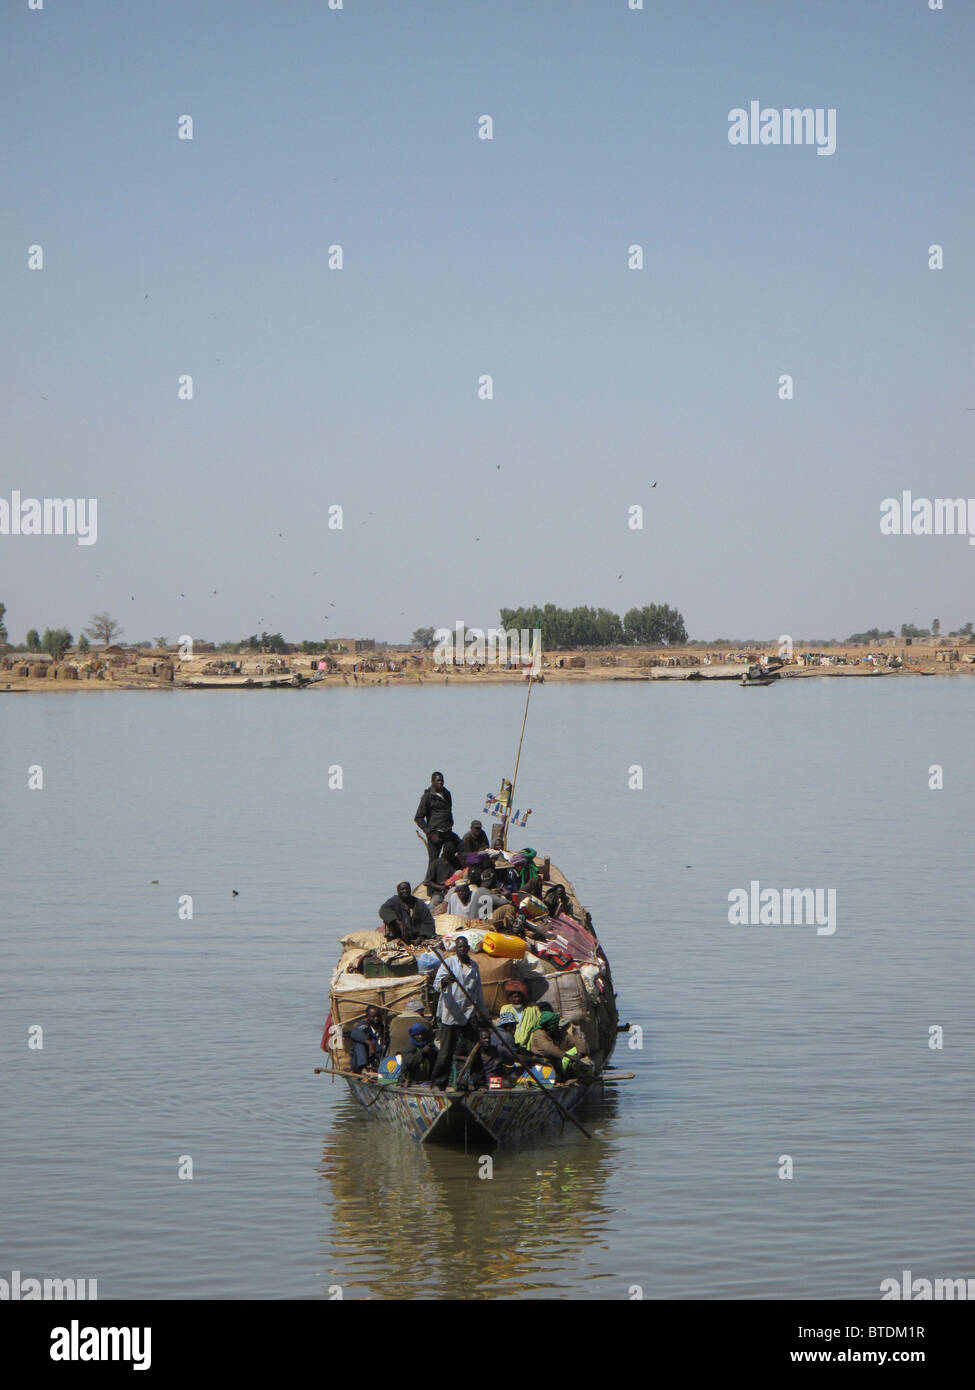 Un barco de madera cargado de pasajeros y equipaje navegando a través del agua Foto de stock